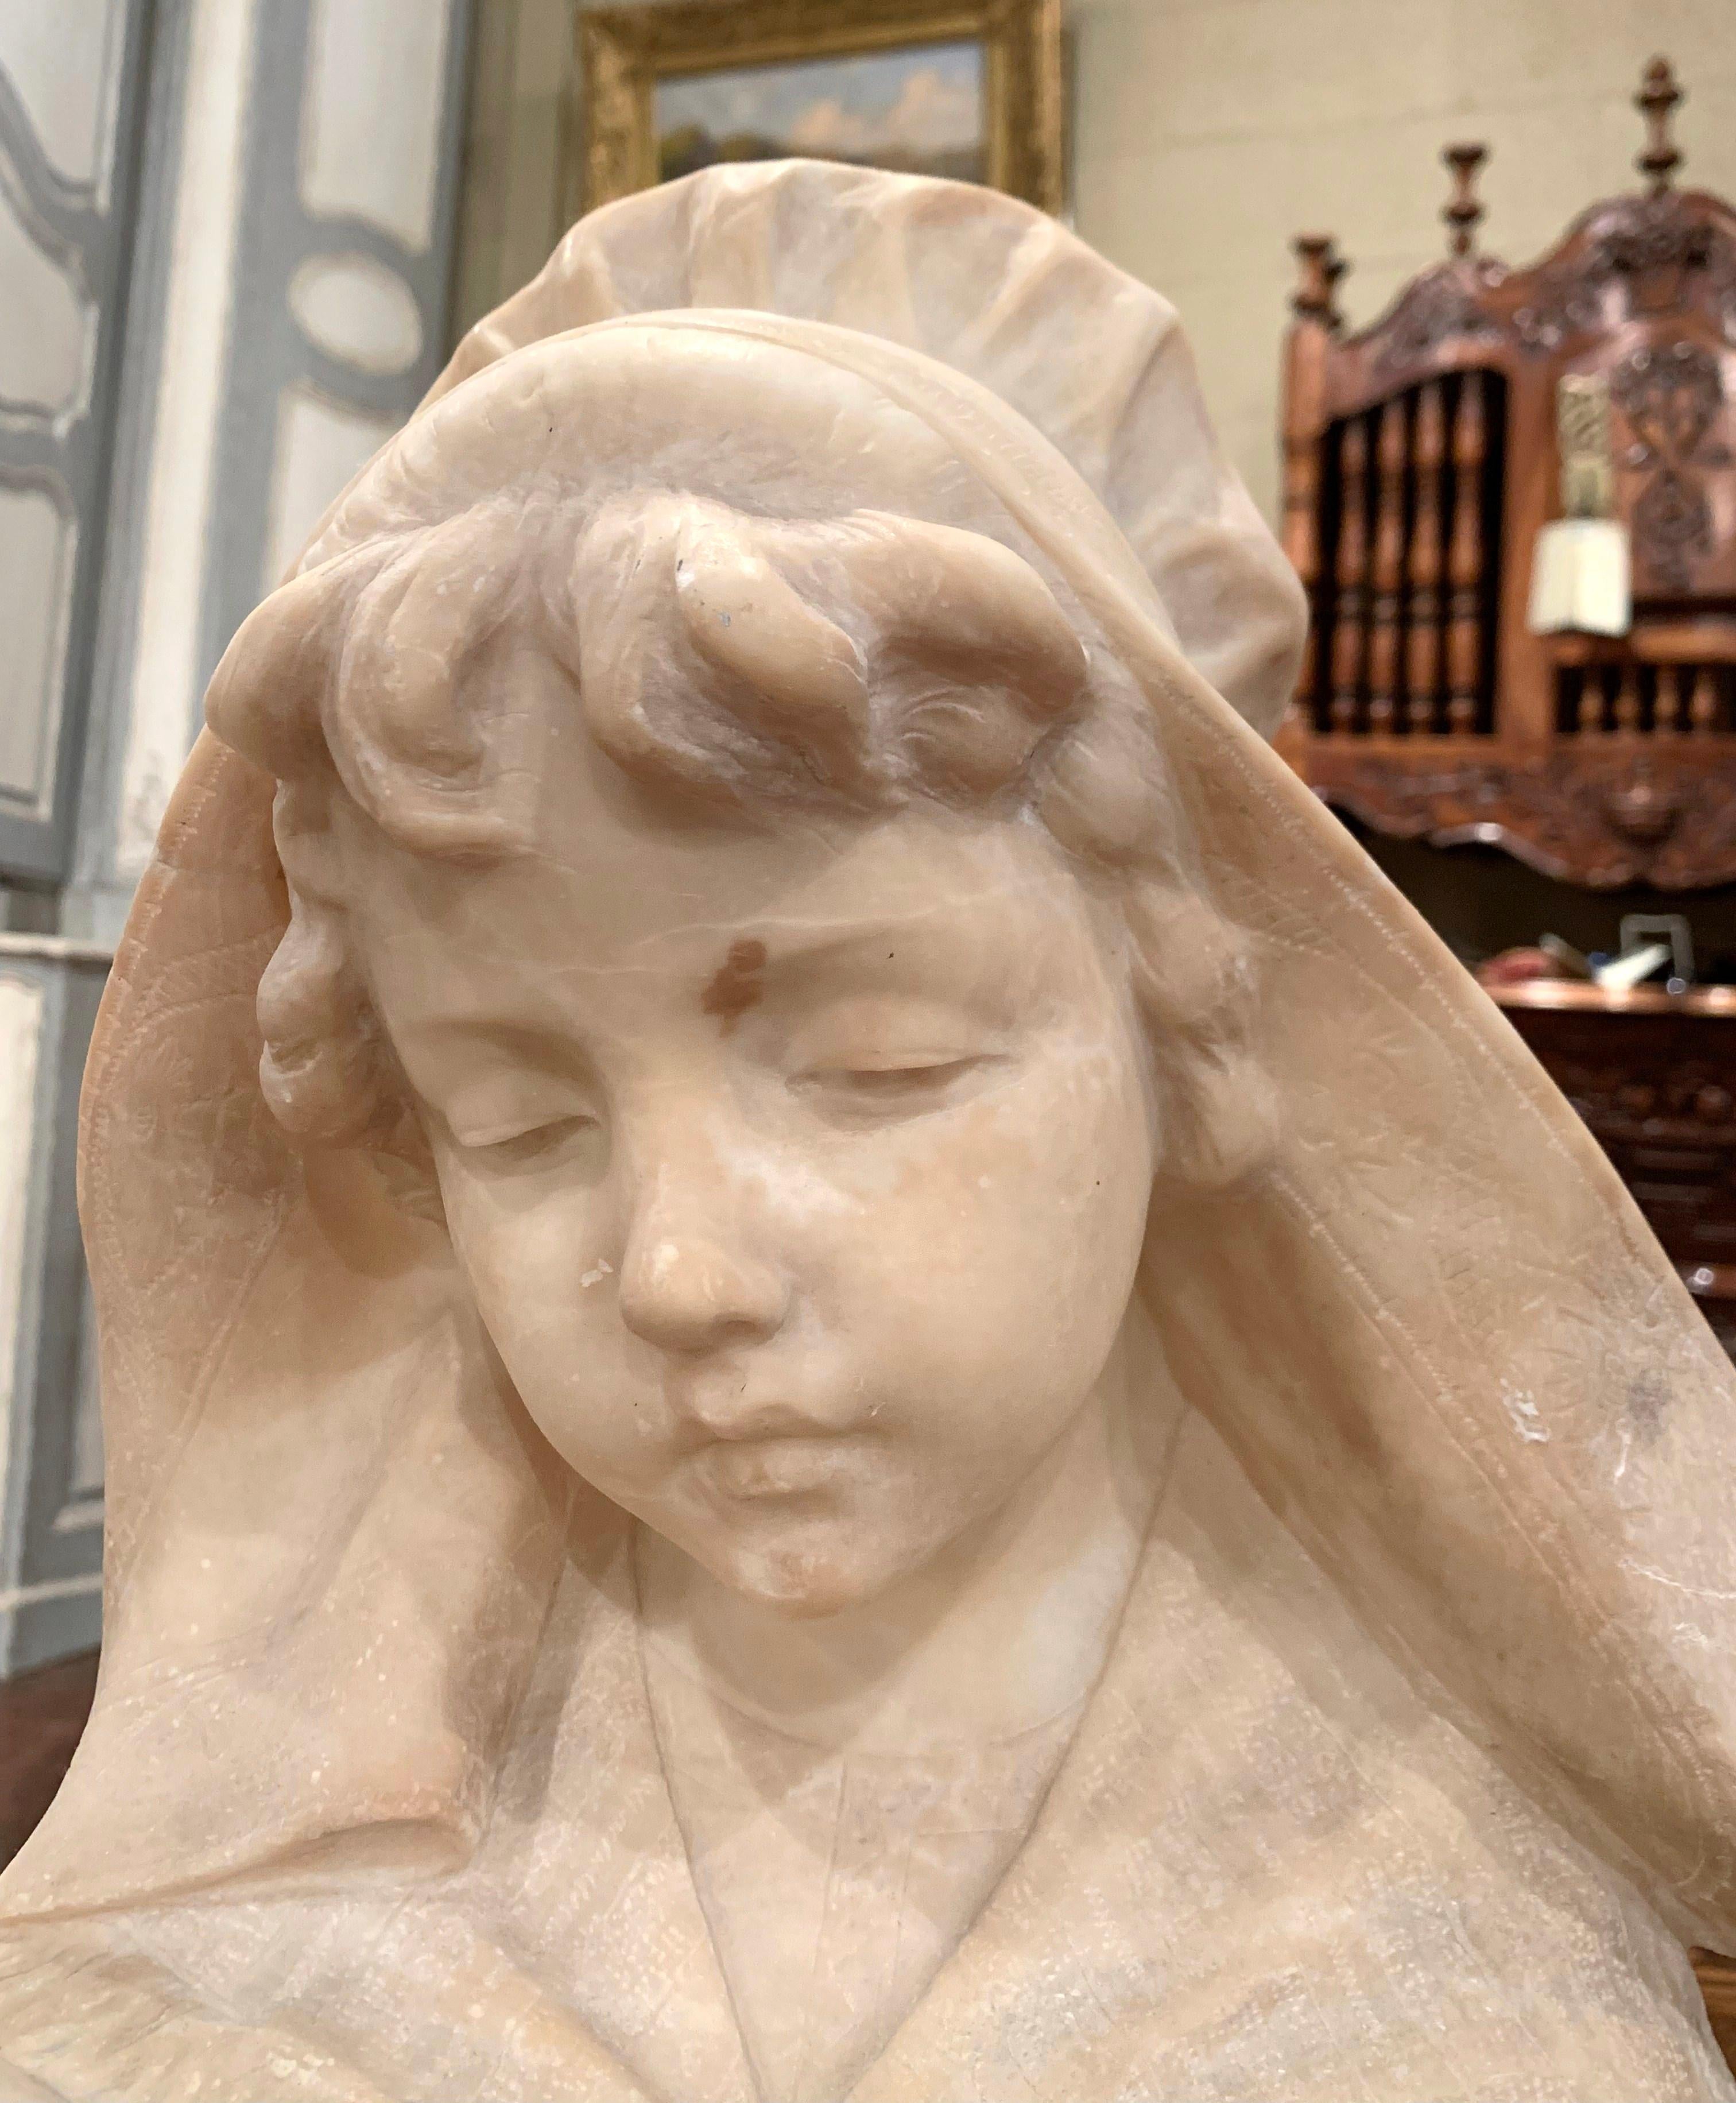 Fabriqué en France vers 1850, ce grand buste ancien en marbre est une véritable représentation de l'élégance française. La sculpture figurative représente le visage d'une belle jeune beauté ; elle est vêtue d'un châle en dentelle sur les épaules,